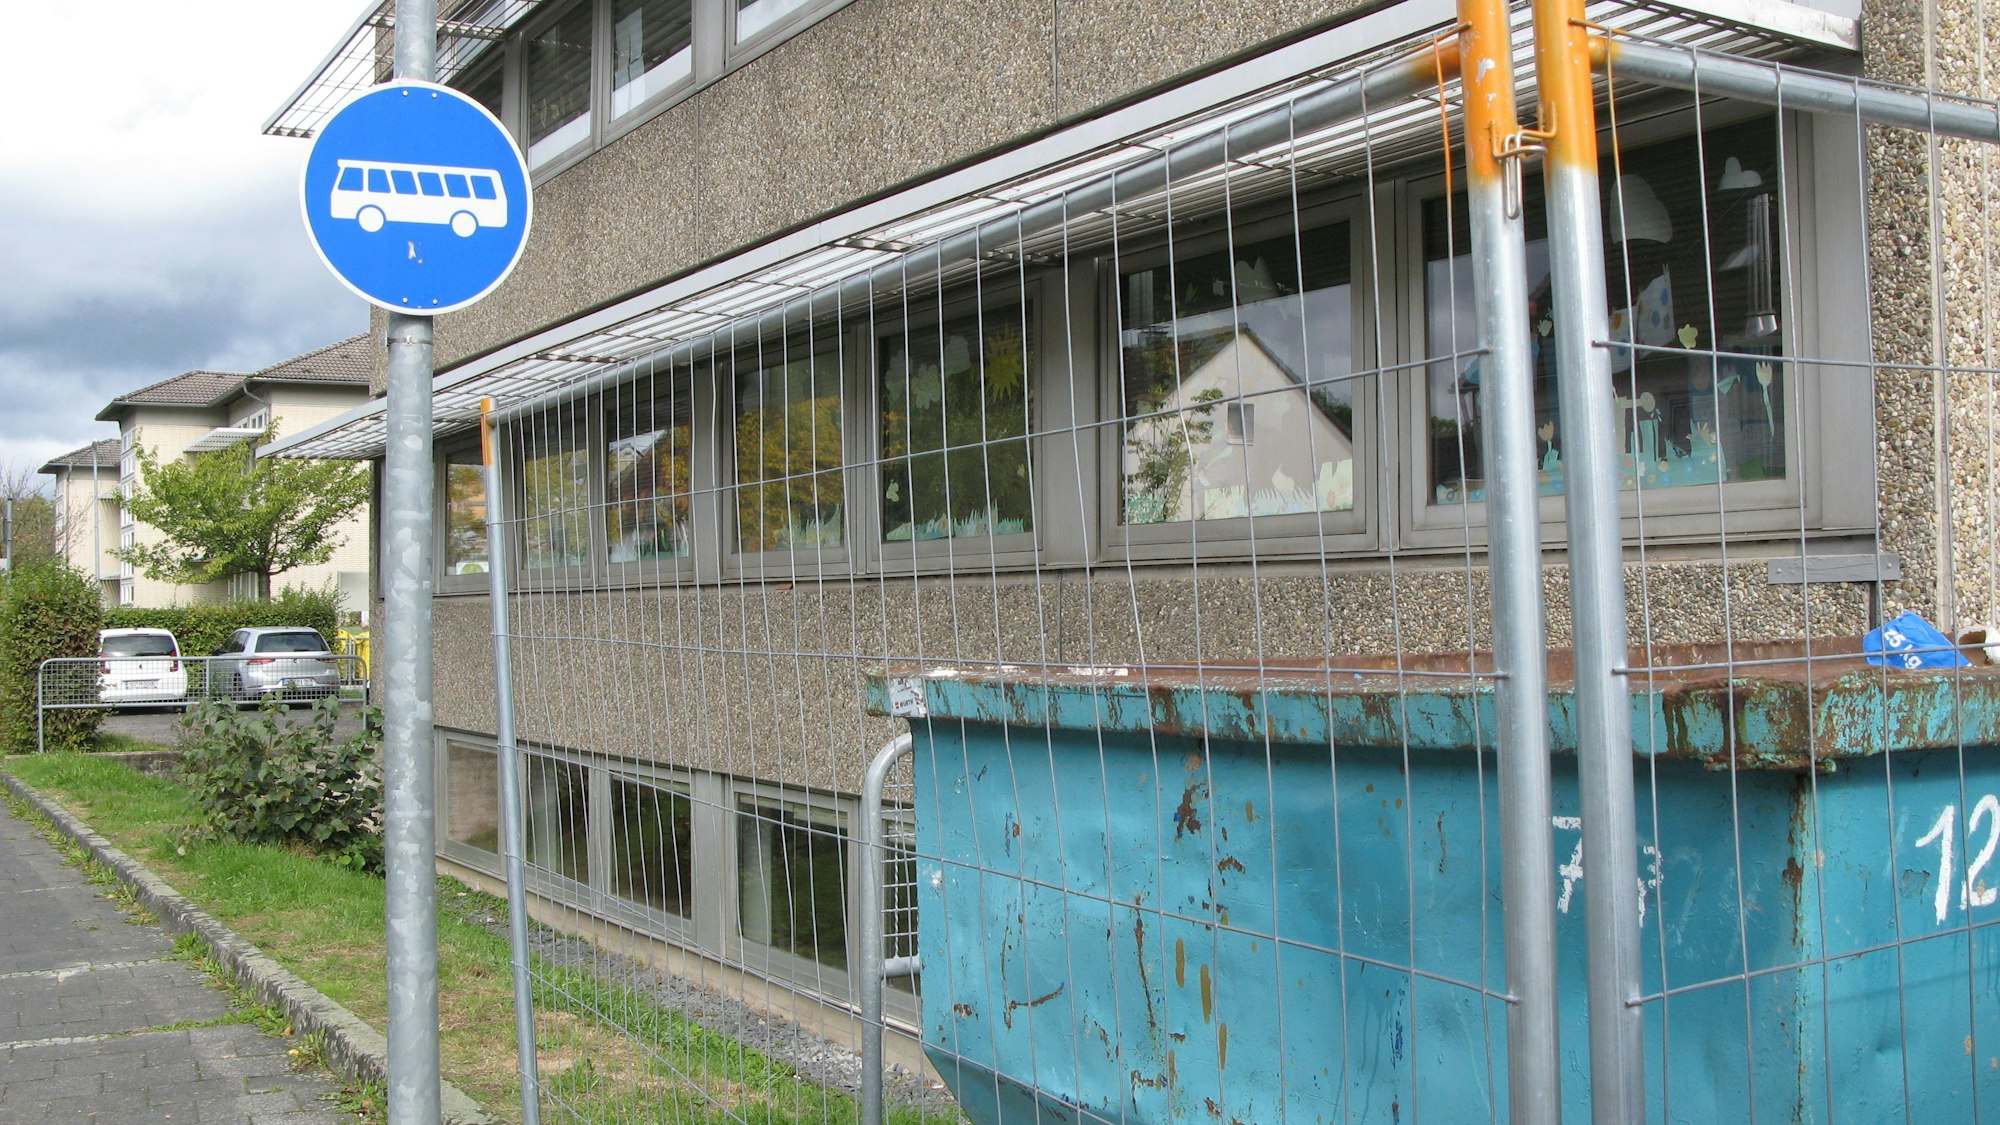 Die Kita in Hennef befindet sich hinter einem Bauzaun. Vor dem Zaun steht ein Schild, das darauf hinweist, dass hier nur Busse langfahren dürfen.